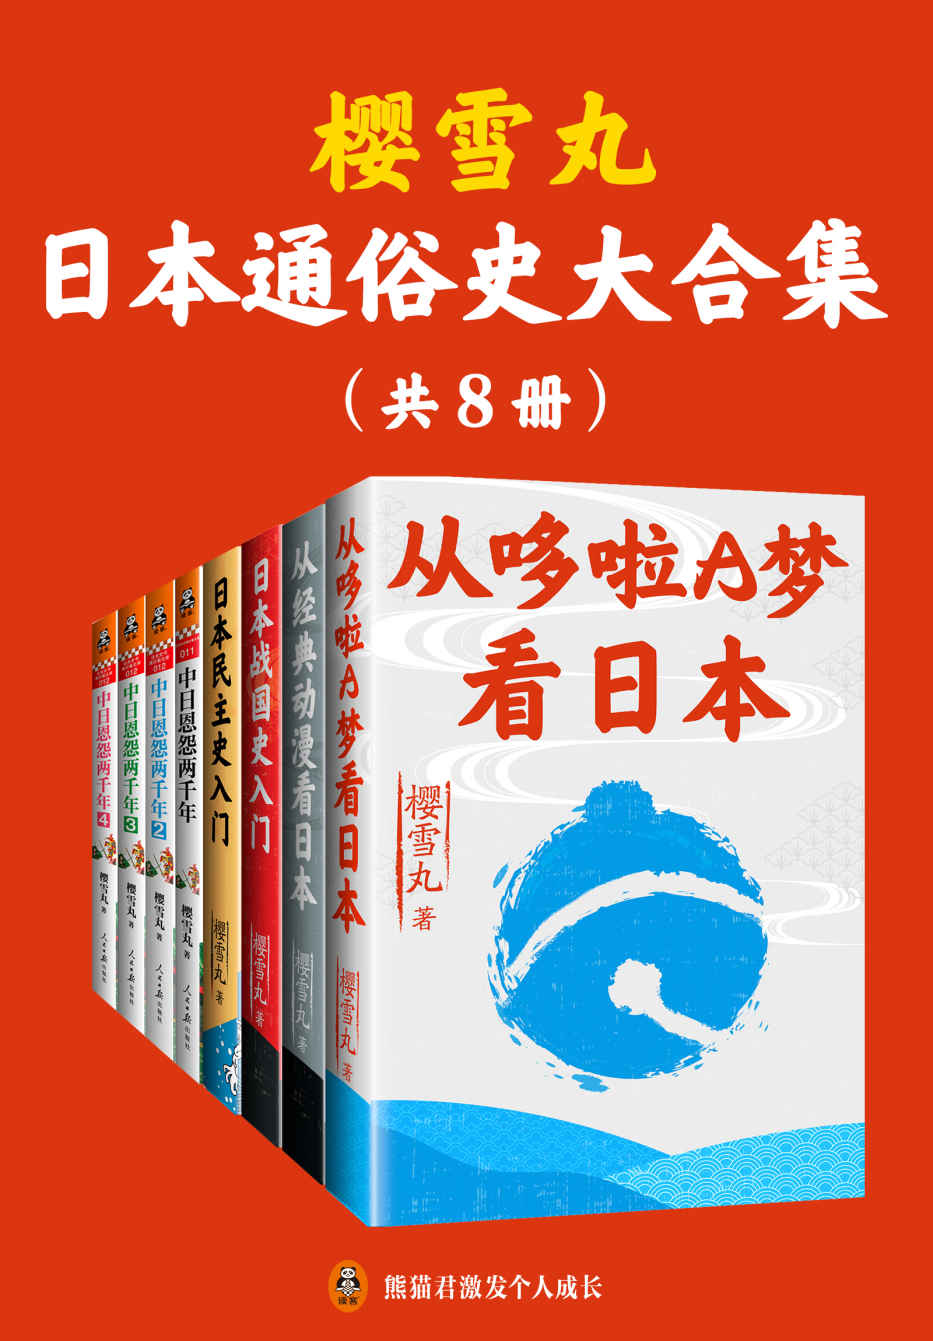 1—樱雪丸通俗日本史代表作（共8册）（正版电子首次发售！《从哆啦A梦看日本》《从经典动漫看日本》《日本民主史入门》《日本战国史入门》《中日恩怨两千年》，带你探寻日本的细节，解析日本历史，发现日本的精神底色！）—pdf+mobi+epub+txt+azw3电子书下载